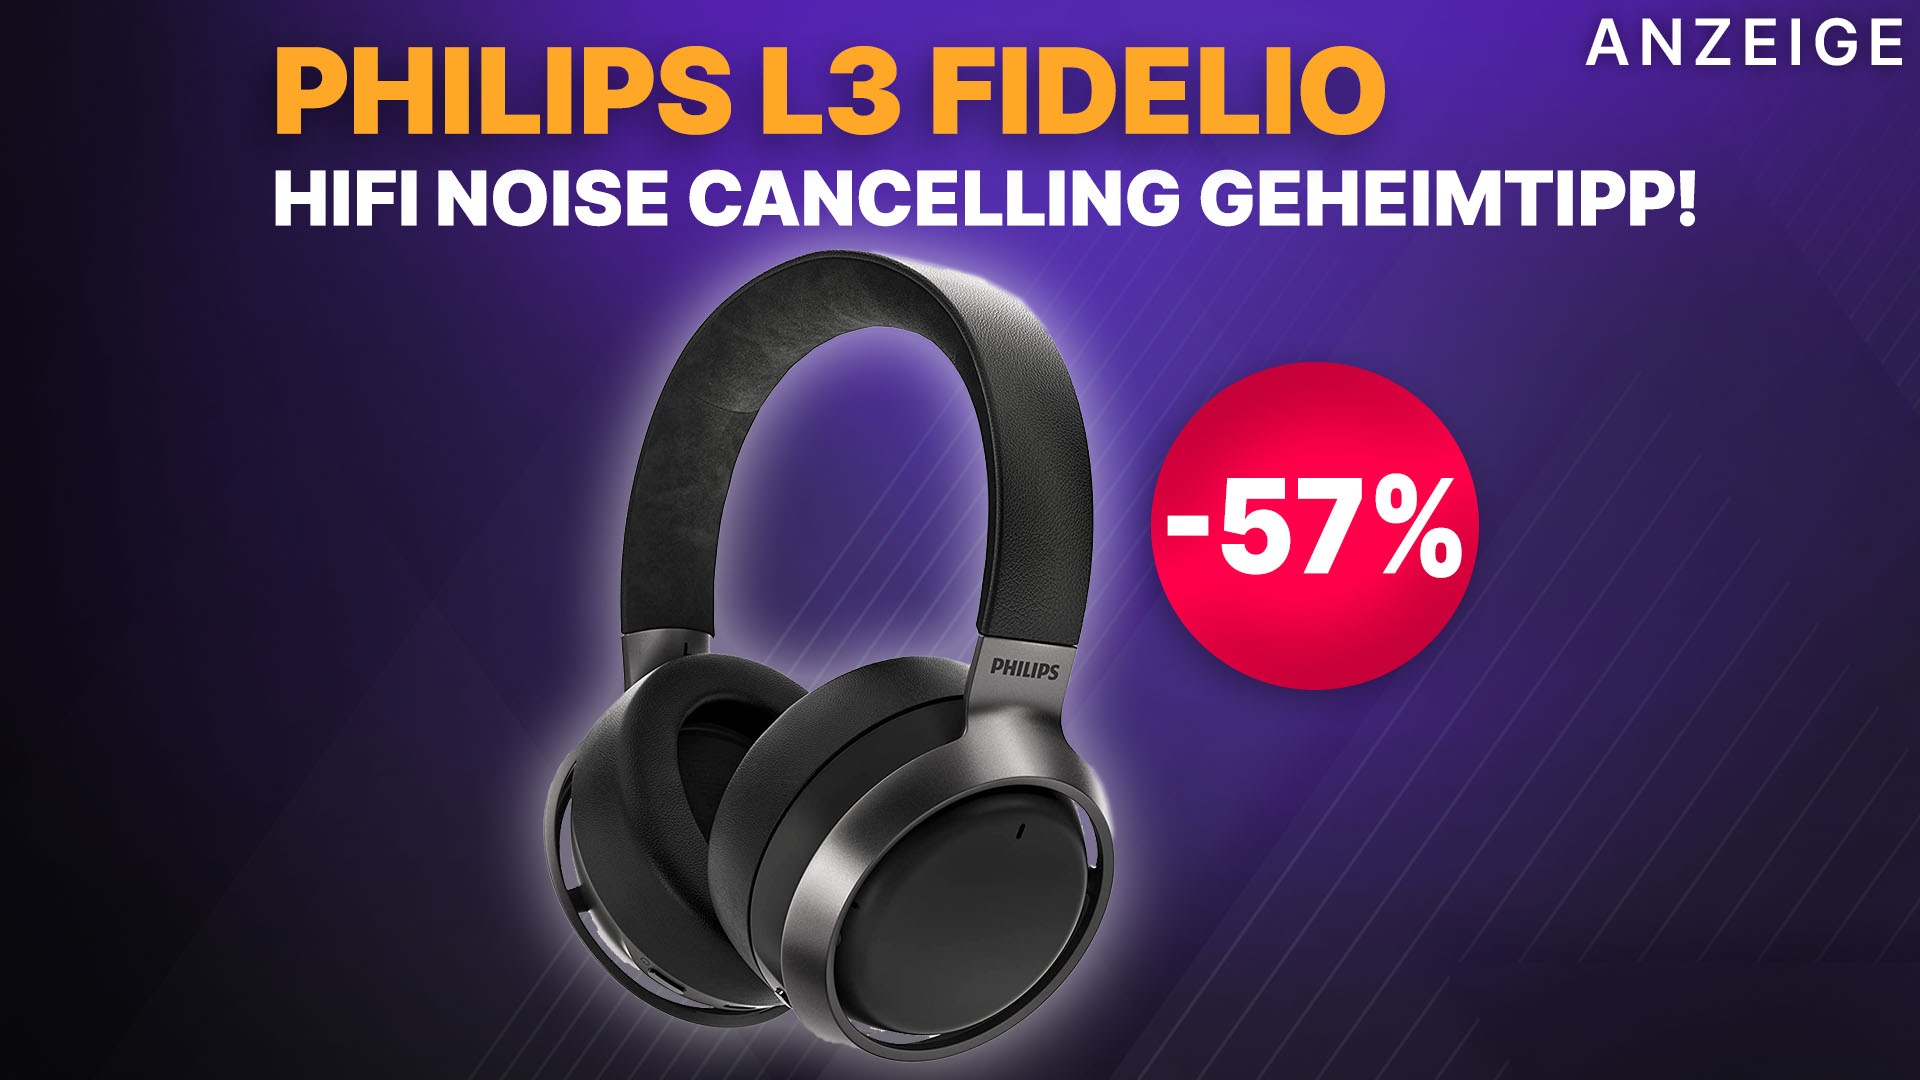 HiFi Noise Cancelling Kopfhörer Geheimtipp jetzt zum halben Preis! Philips  Fidelio L3 ANC Headset bei Amazon krass reduziert